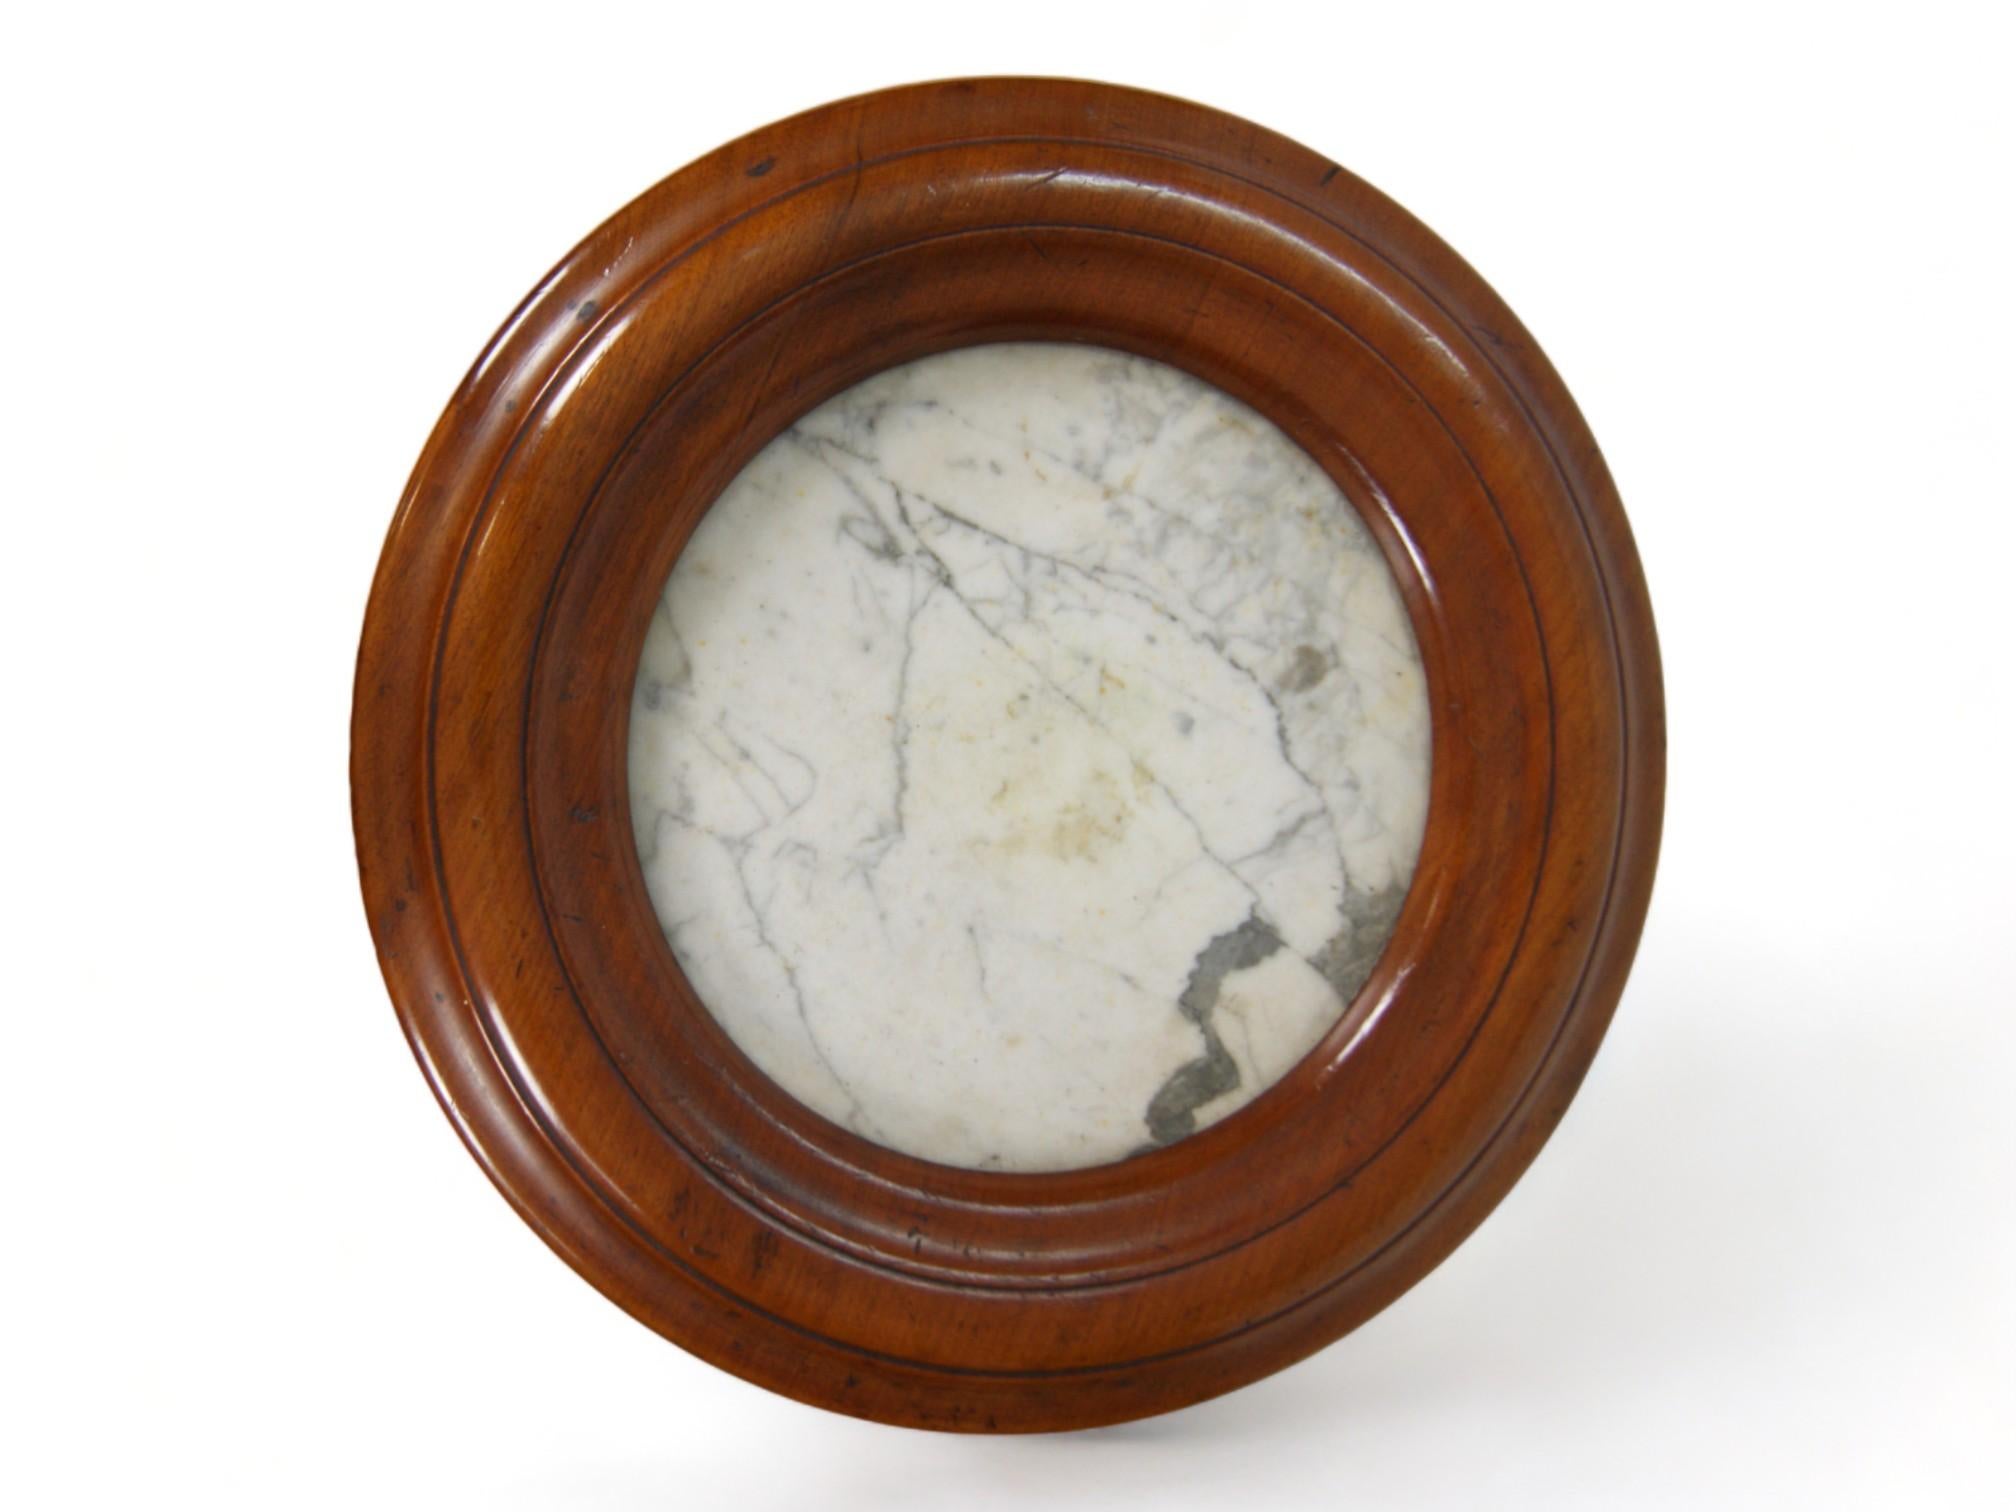 La table circulaire, méticuleusement fabriquée à la main au XIXe siècle, est un chef-d'œuvre qui se distingue par son charme unique et sa facture exceptionnelle. Avec un plateau en marbre qui ajoute élégance et durabilité, cette table est une